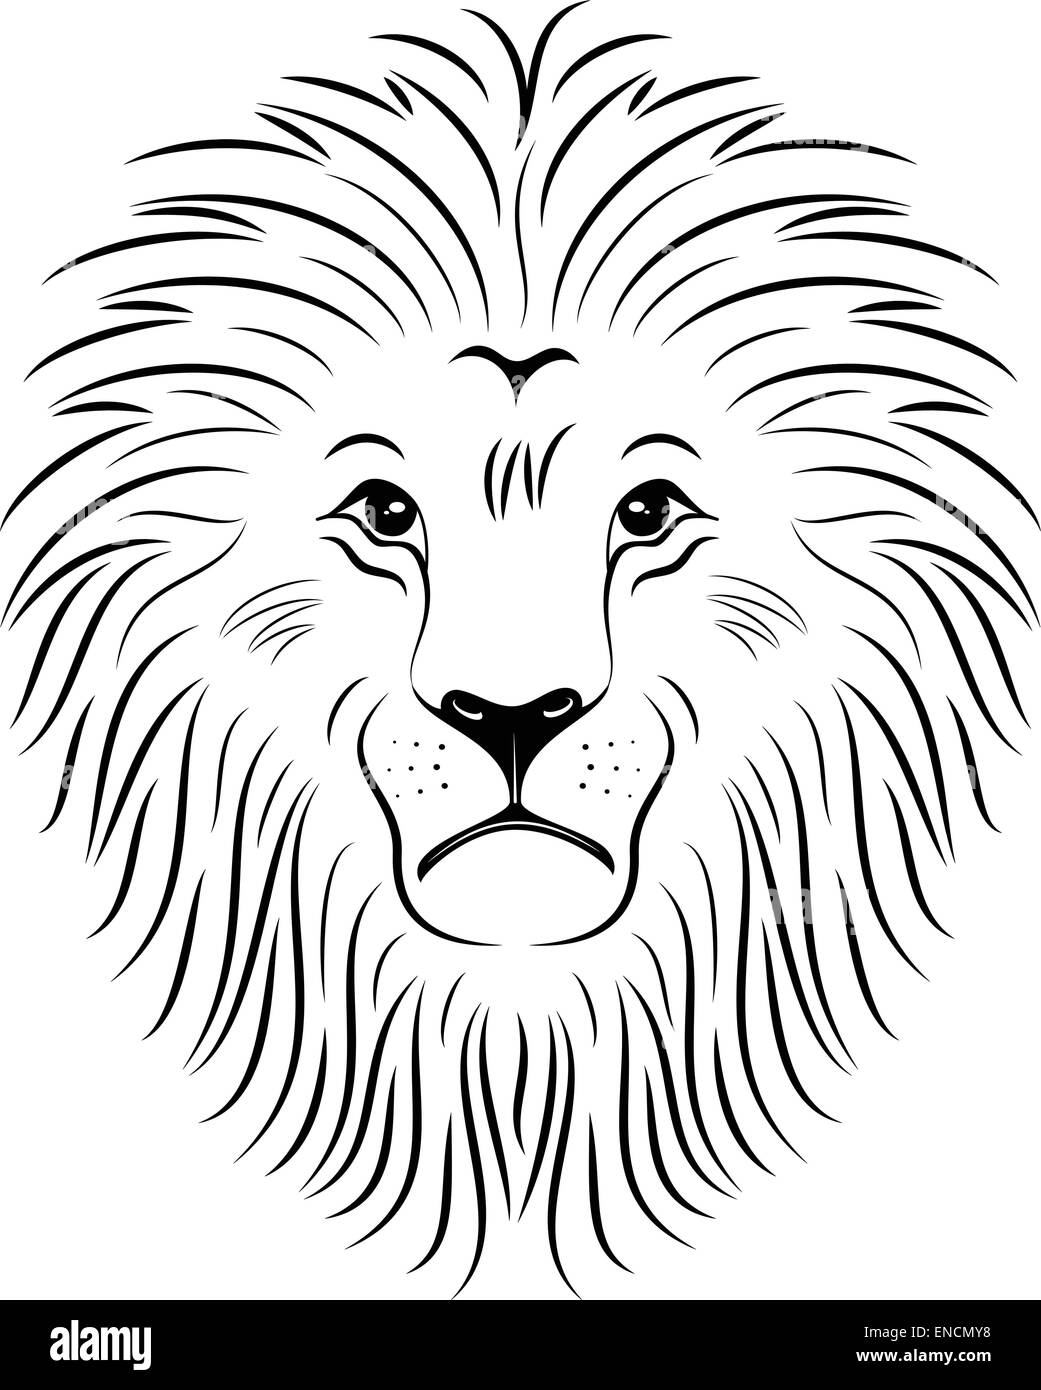 Löwen-Gesicht-Silhouette Stock Vektor